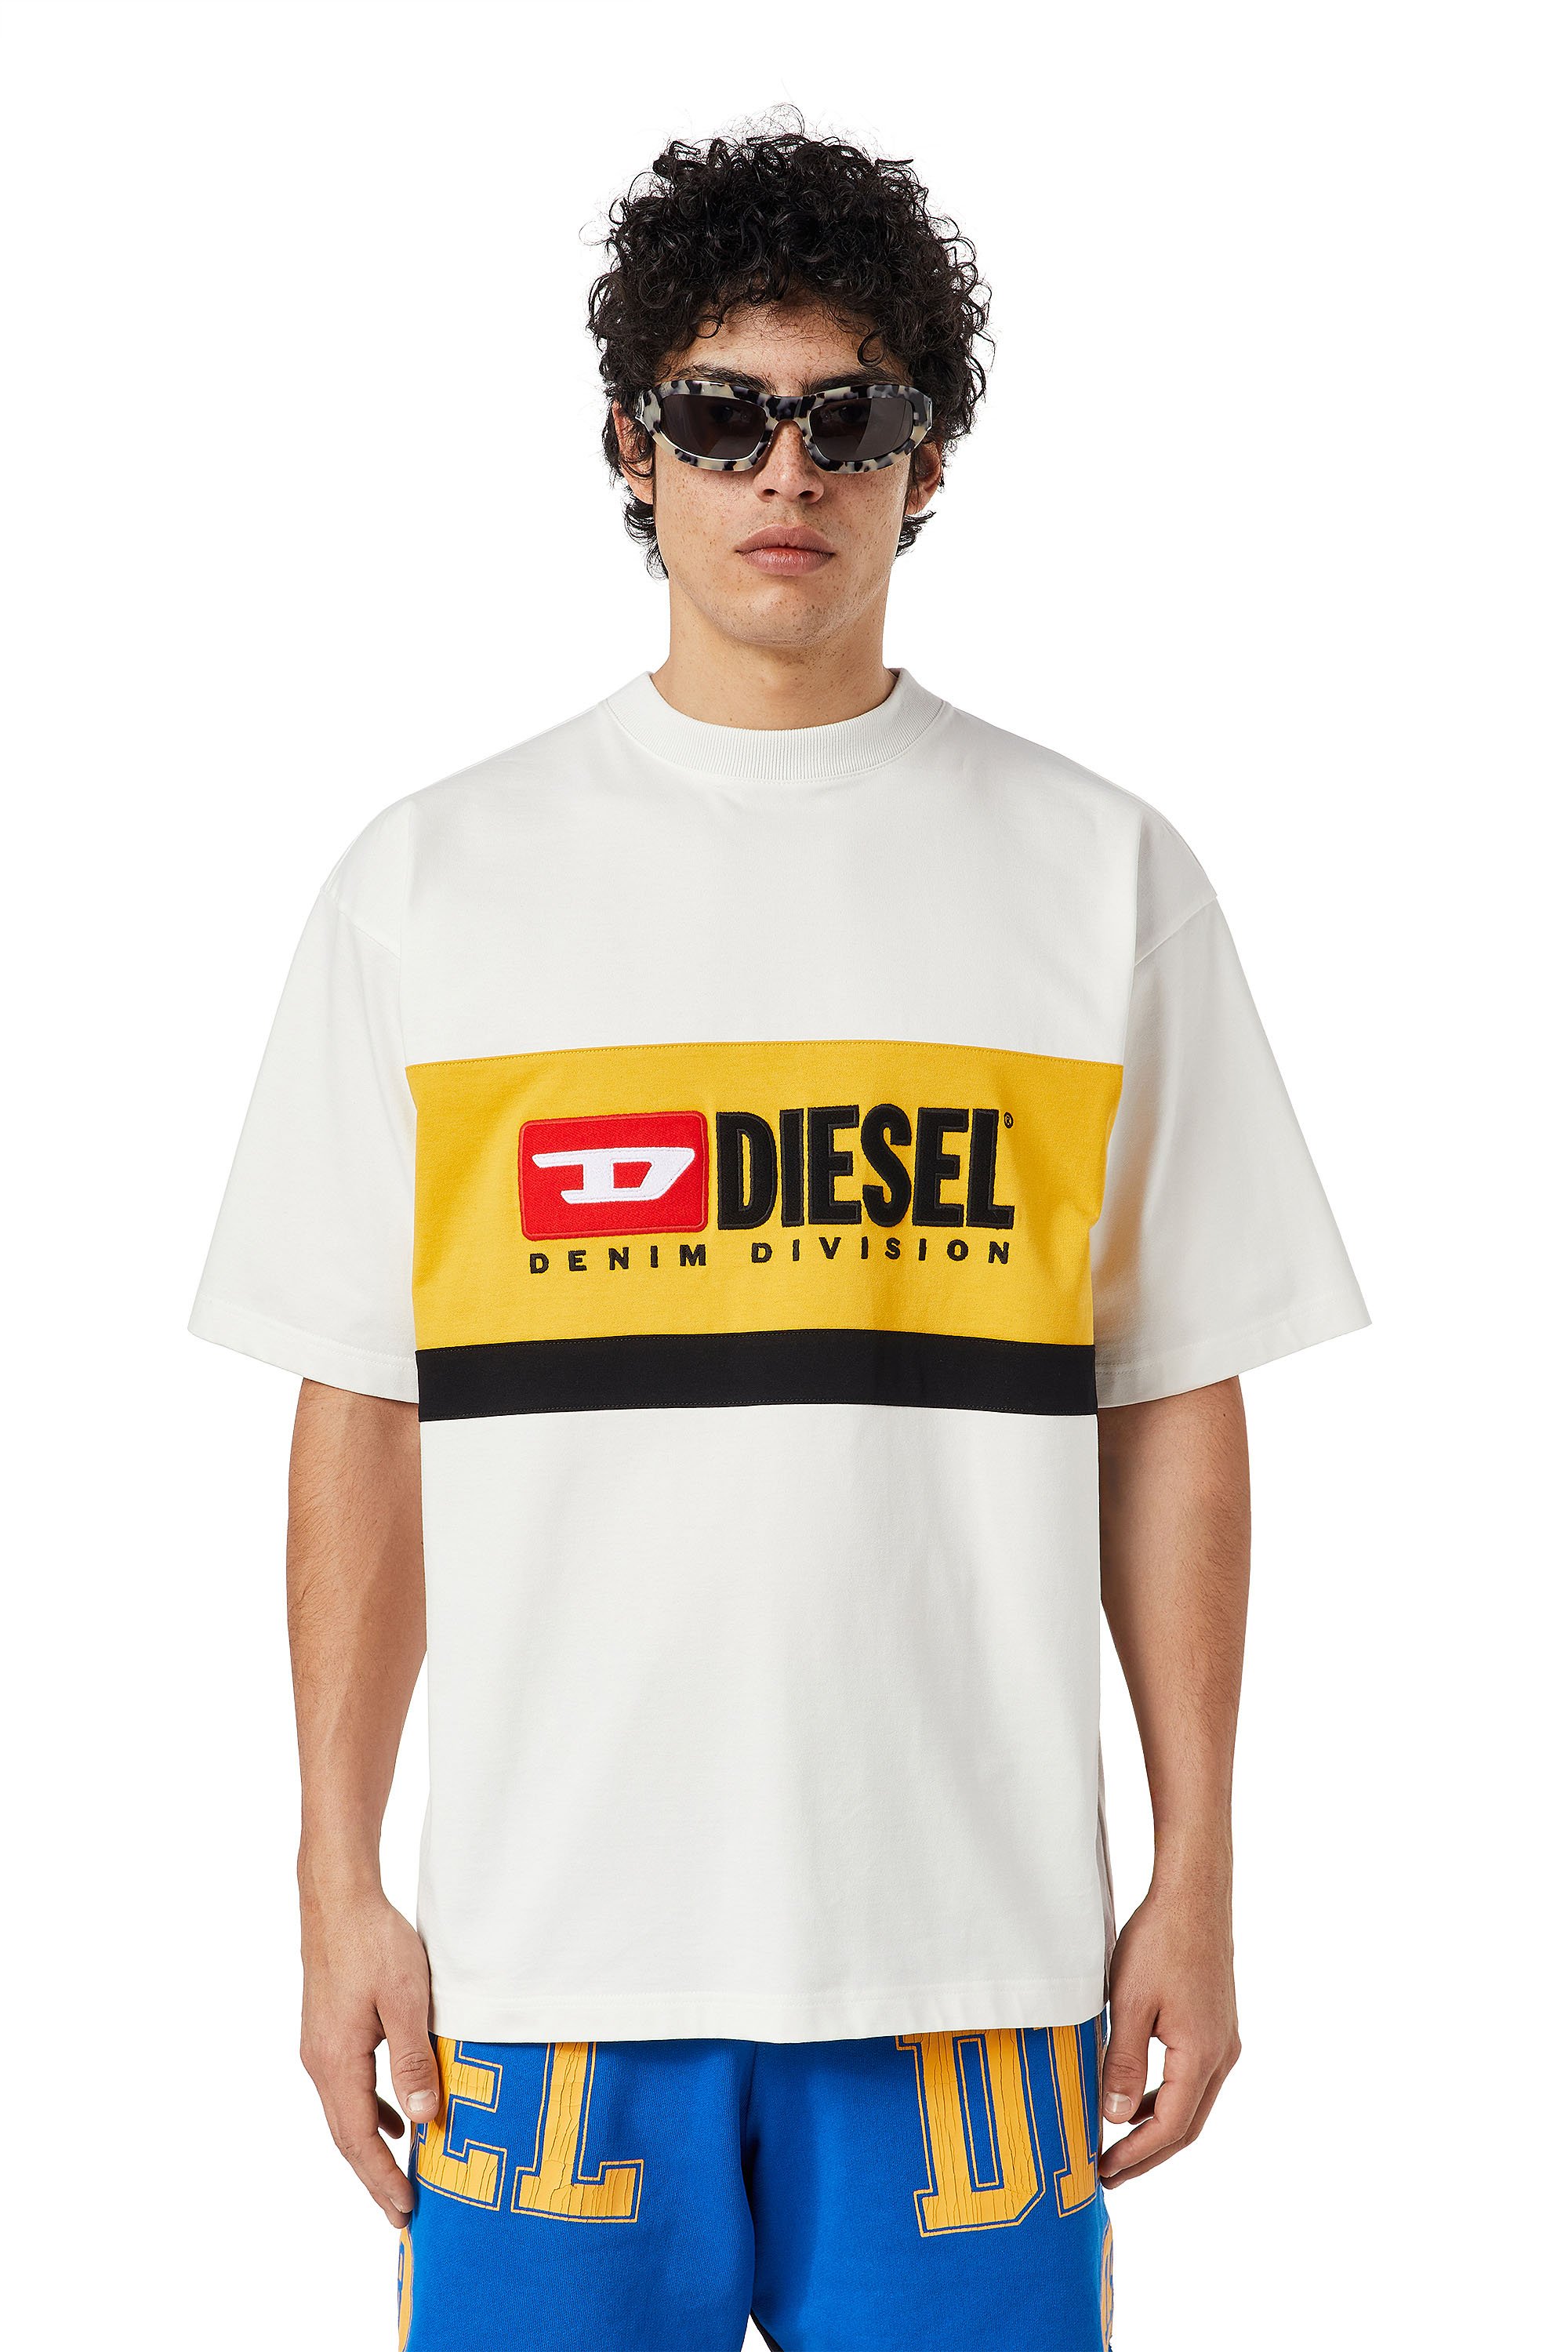 Diesel - T-STREAP-DIVISION, Weiß - Image 1